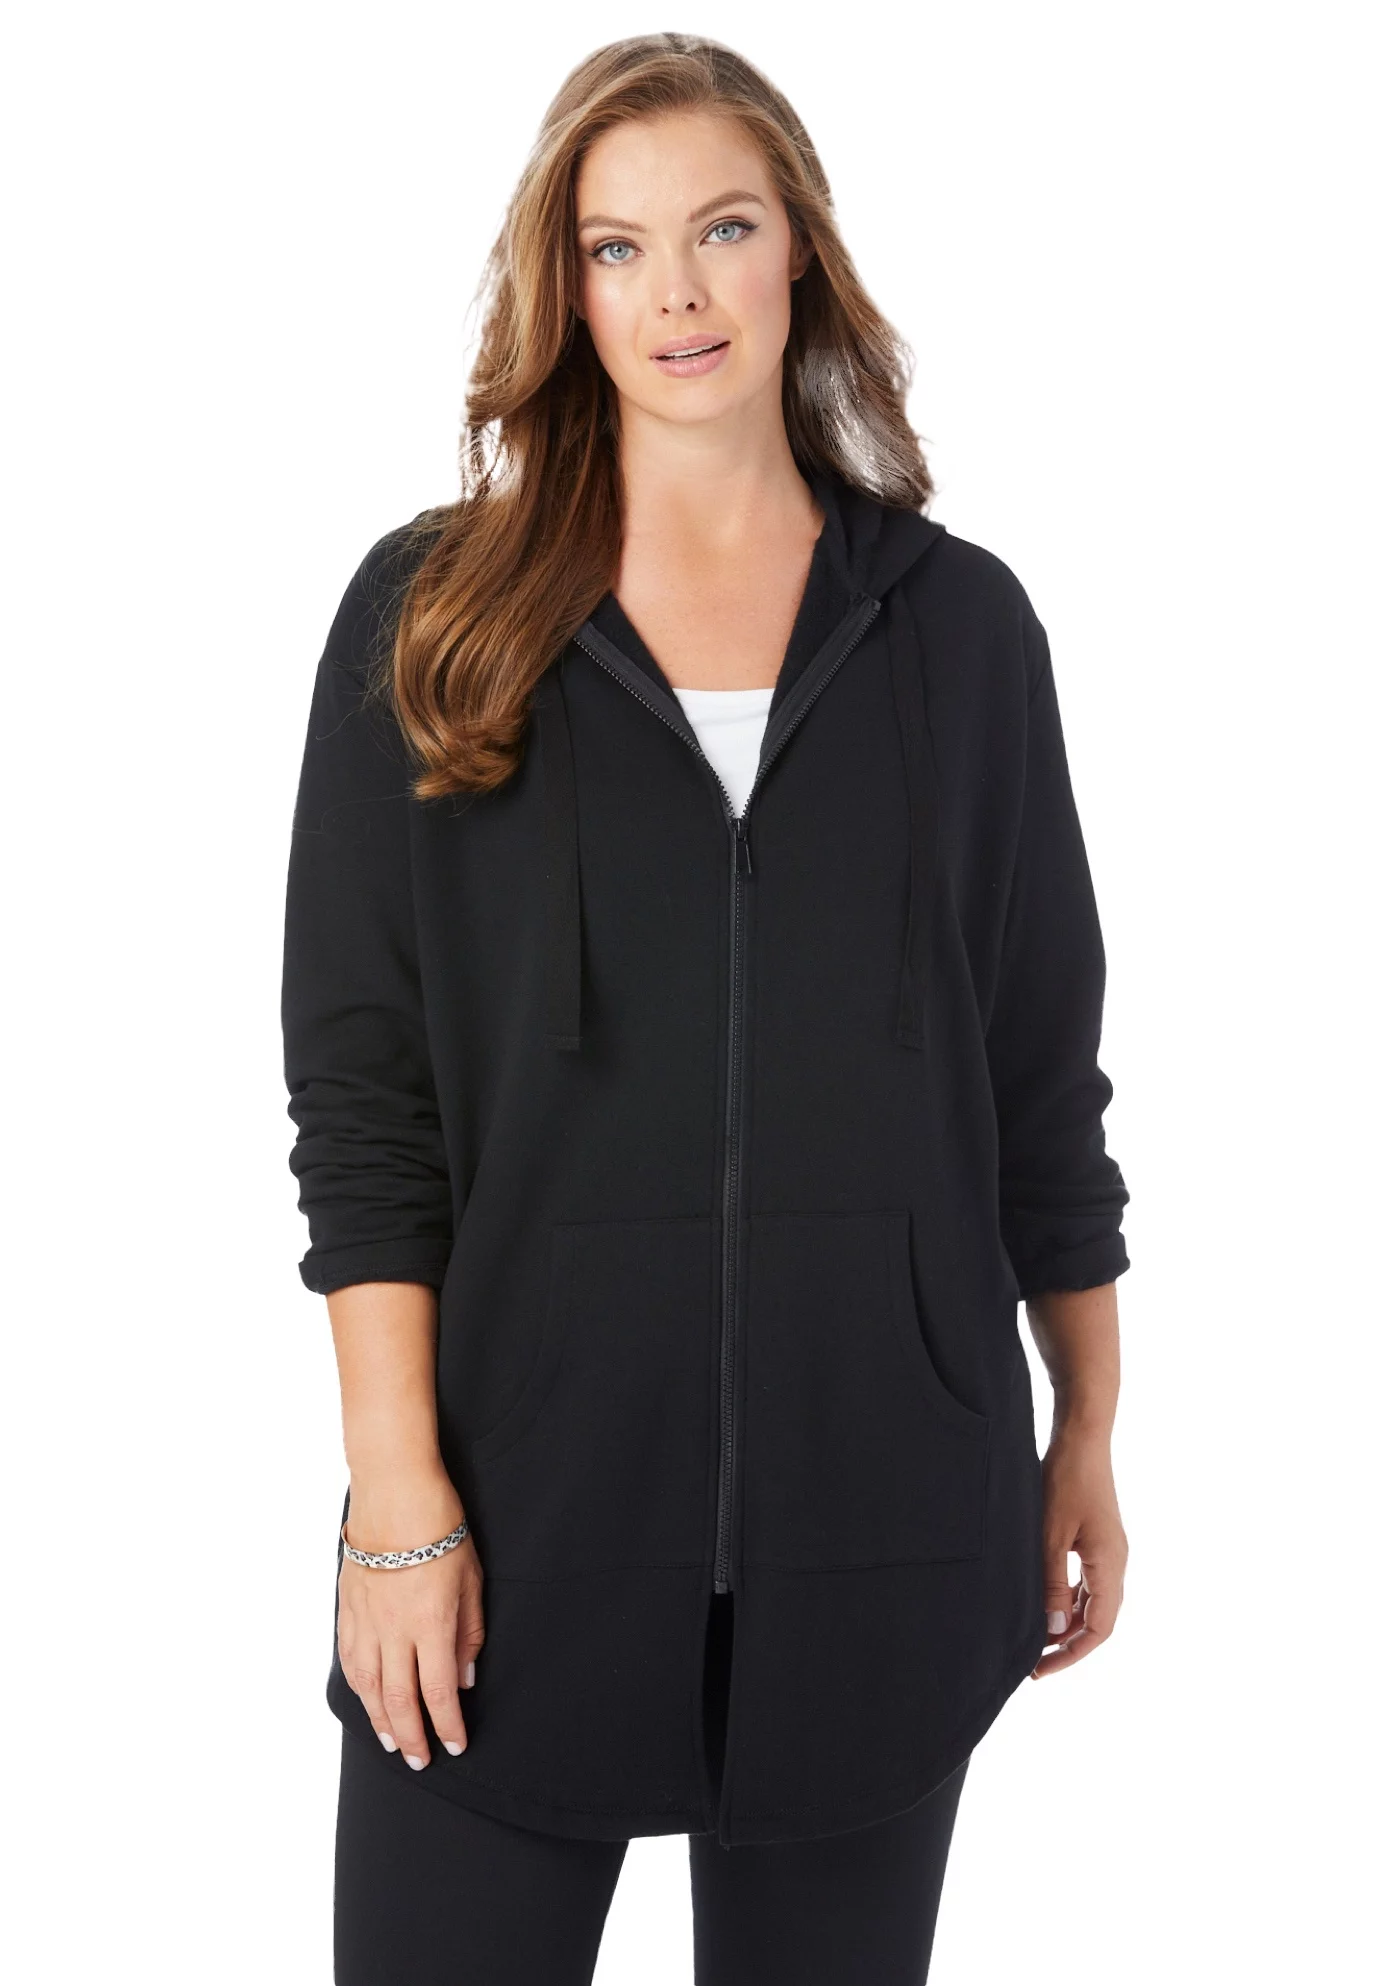 Roaman's Women's Plus Size Fleece Zip Hoodie Jacket - L, Black